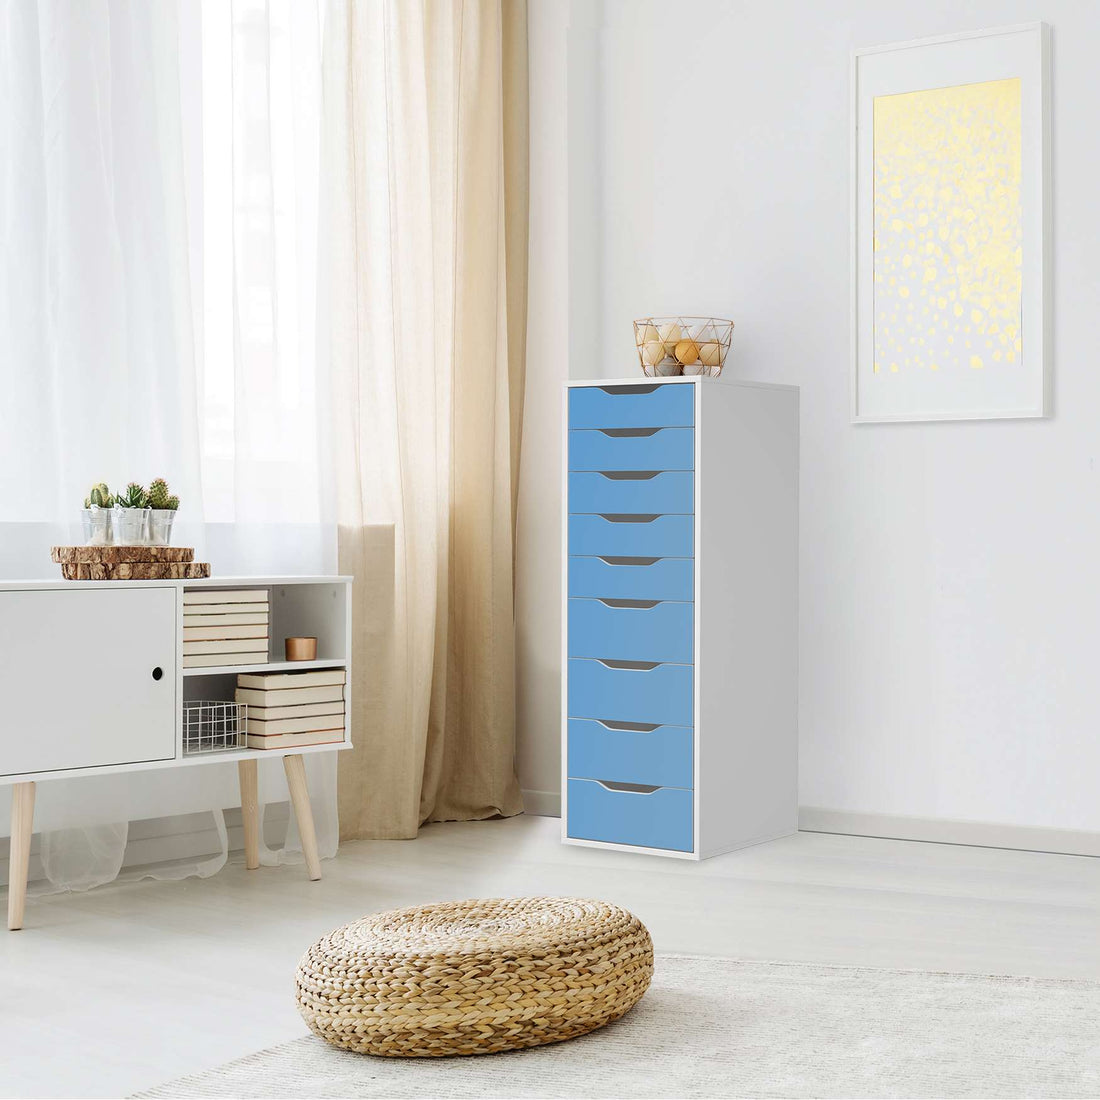 Folie für Möbel Blau Light - IKEA Alex 9 Schubladen - Wohnzimmer